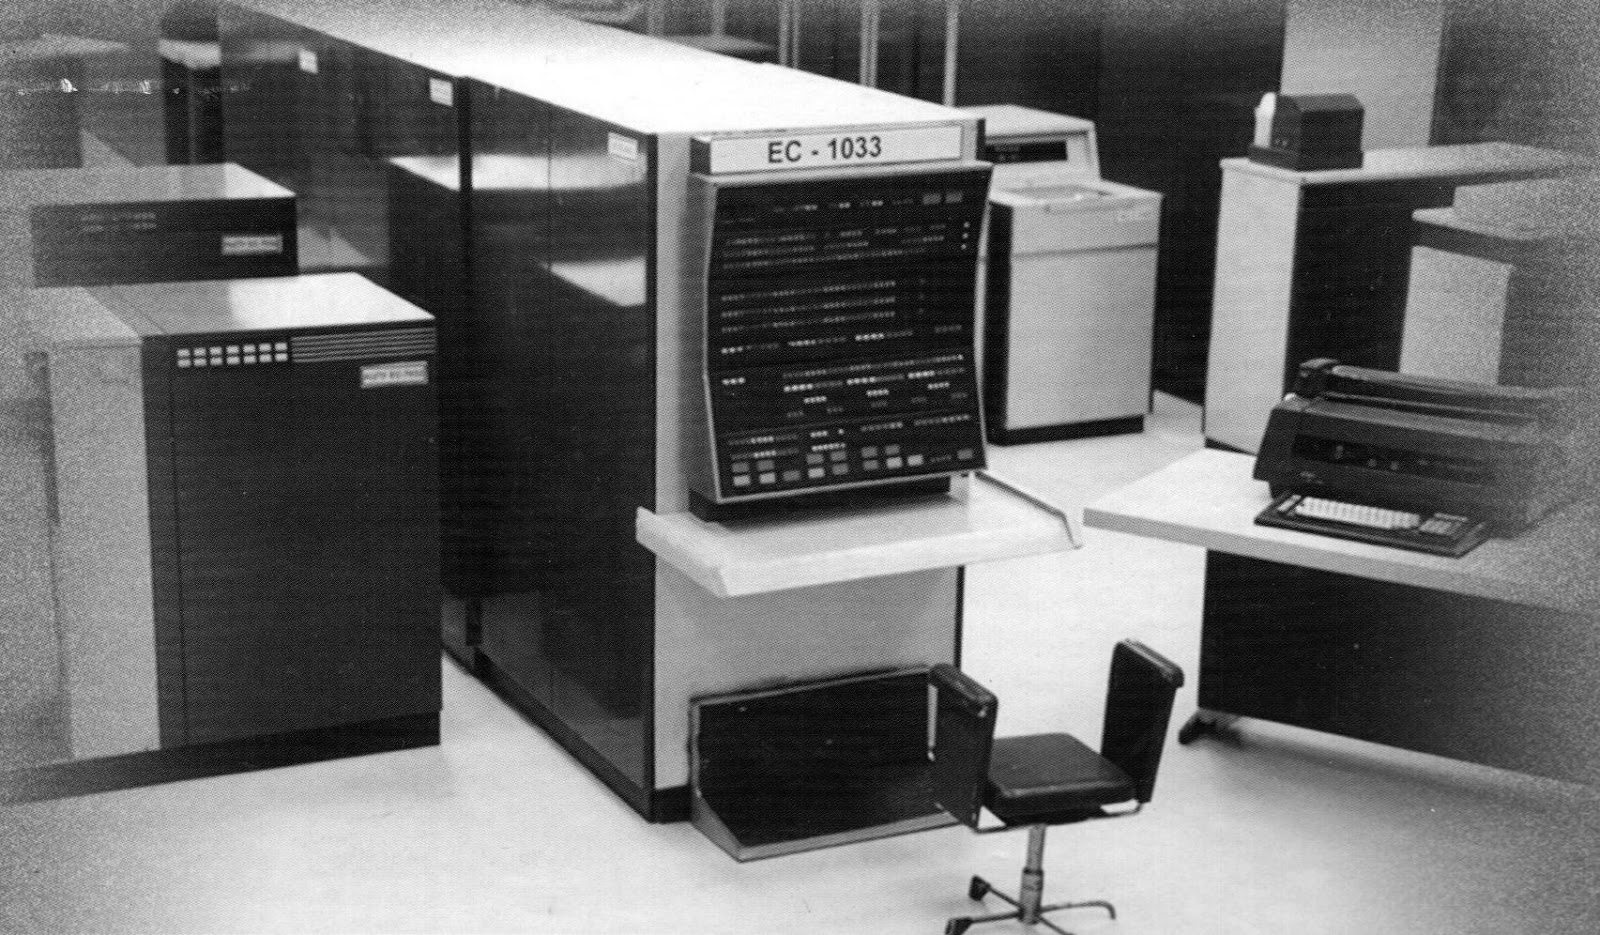 Электронный компьютер электронная машина. ЕС-1033 вычислительная машина. Представитель III-го поколения ЭВМ — ЕС-1022. IBM 3 поколение. IBM 370 поколение ЭВМ.